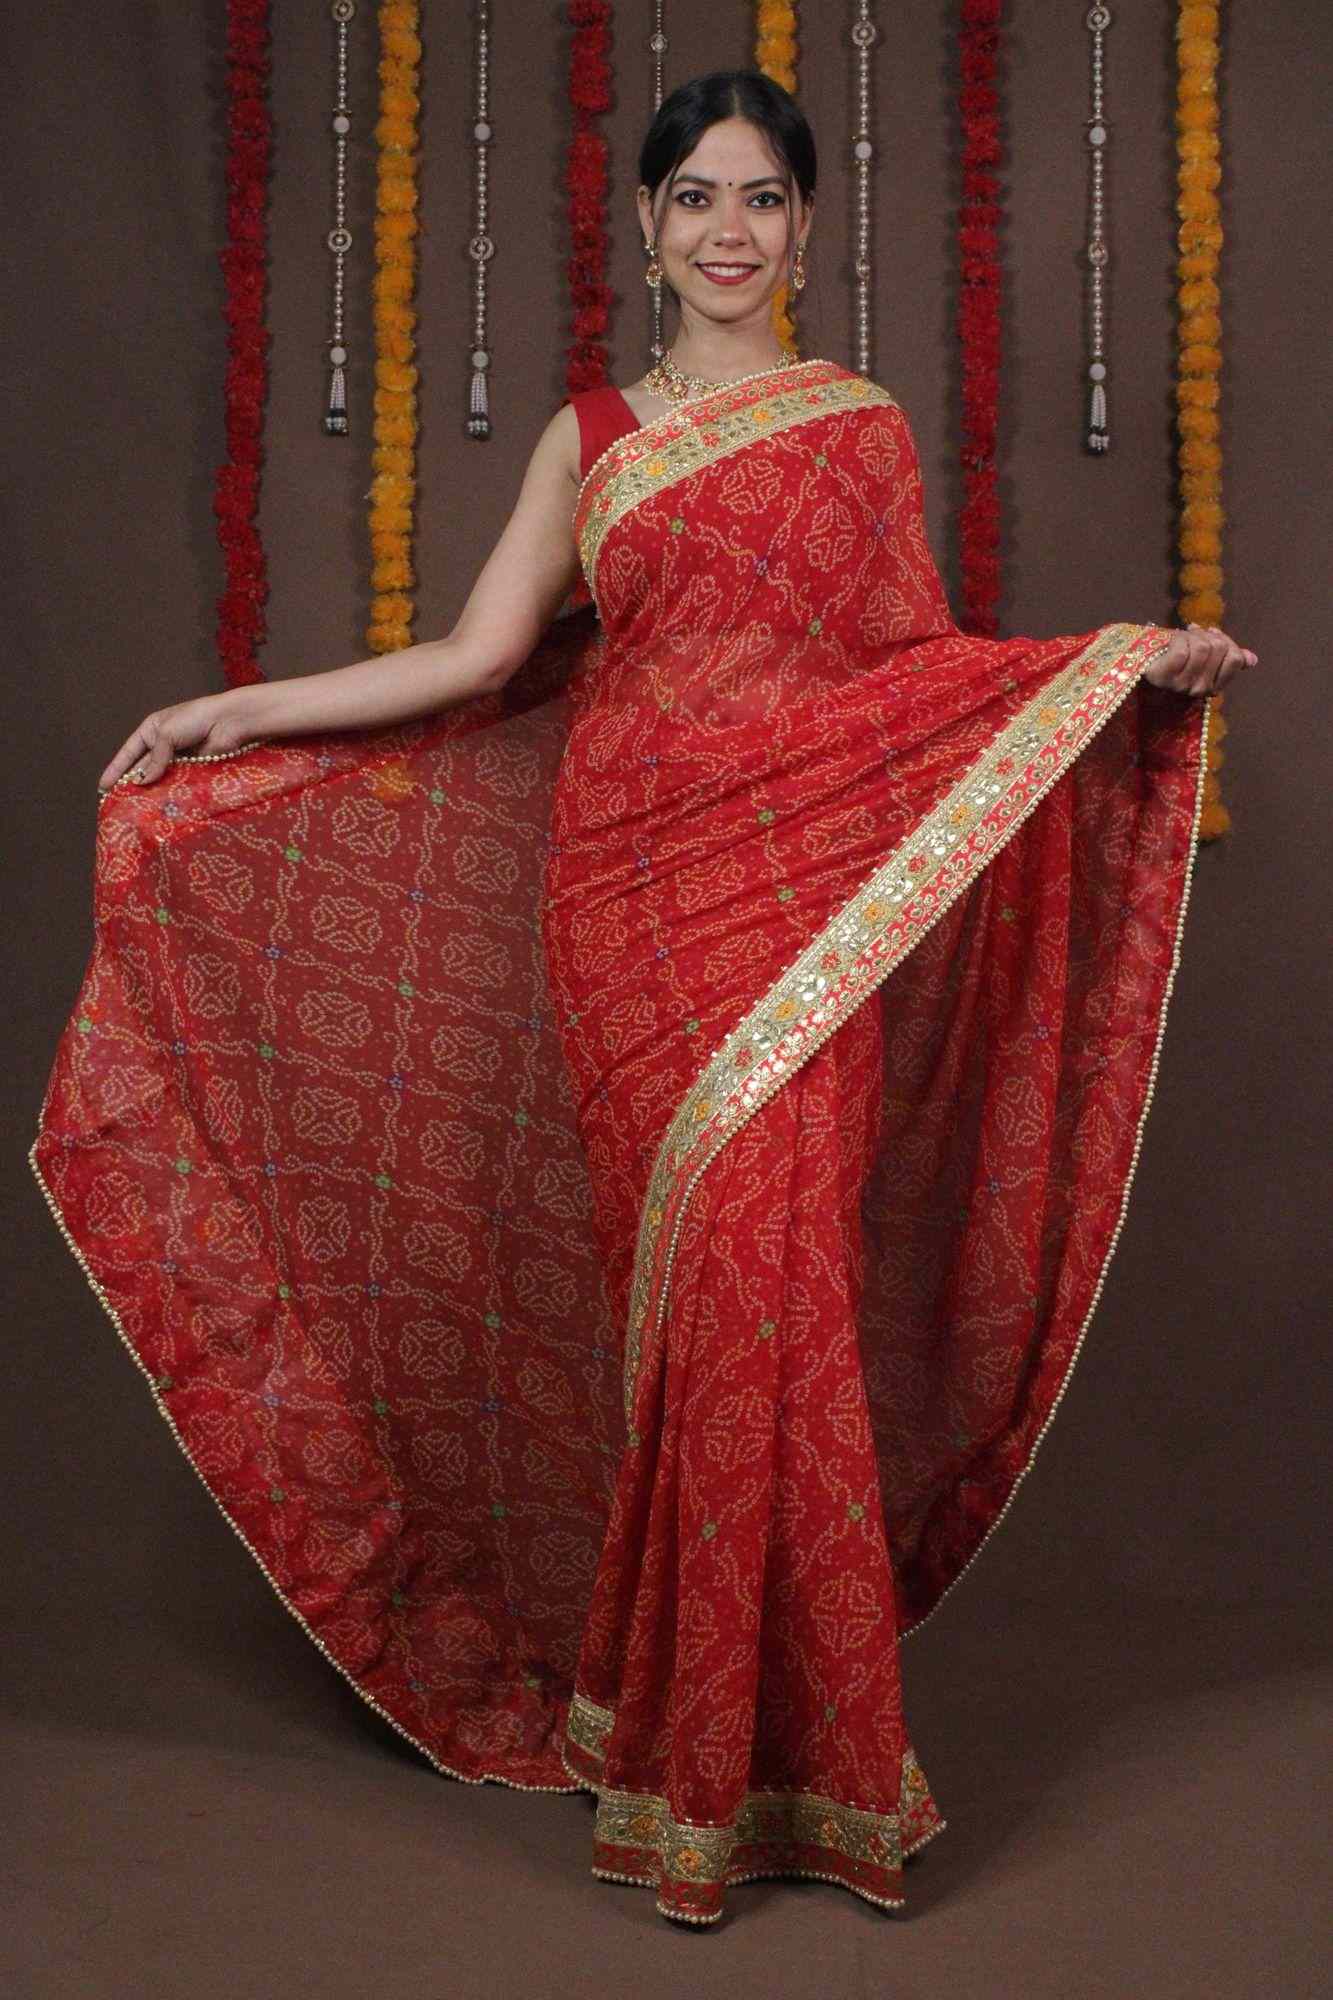 Red Bandhani Gotta Patti Bandhani Wrap in 1 minute saree - Isadora Life Online Shopping Store